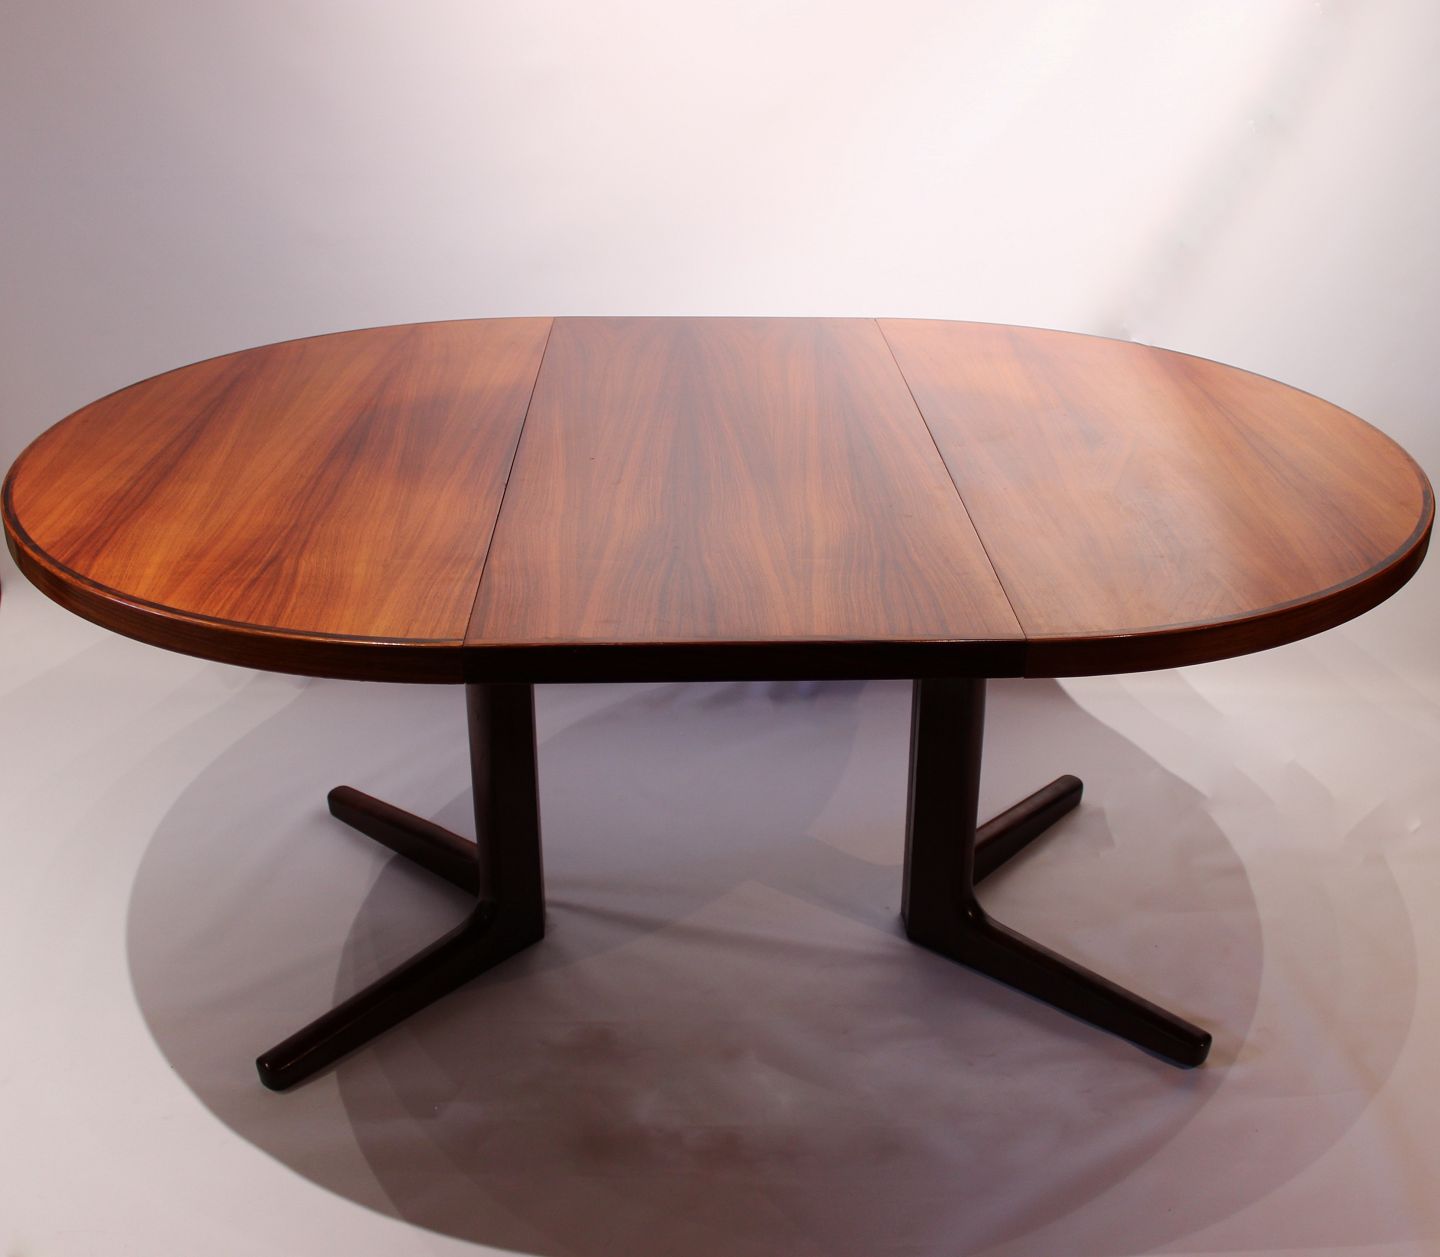 KAD ringen - Rundt spisebord i med 2 udtræksplader dansk design Vejle Stole - Rundt spisebord i palisander med 2 udtræksplader af dansk design fra Vejle Stole